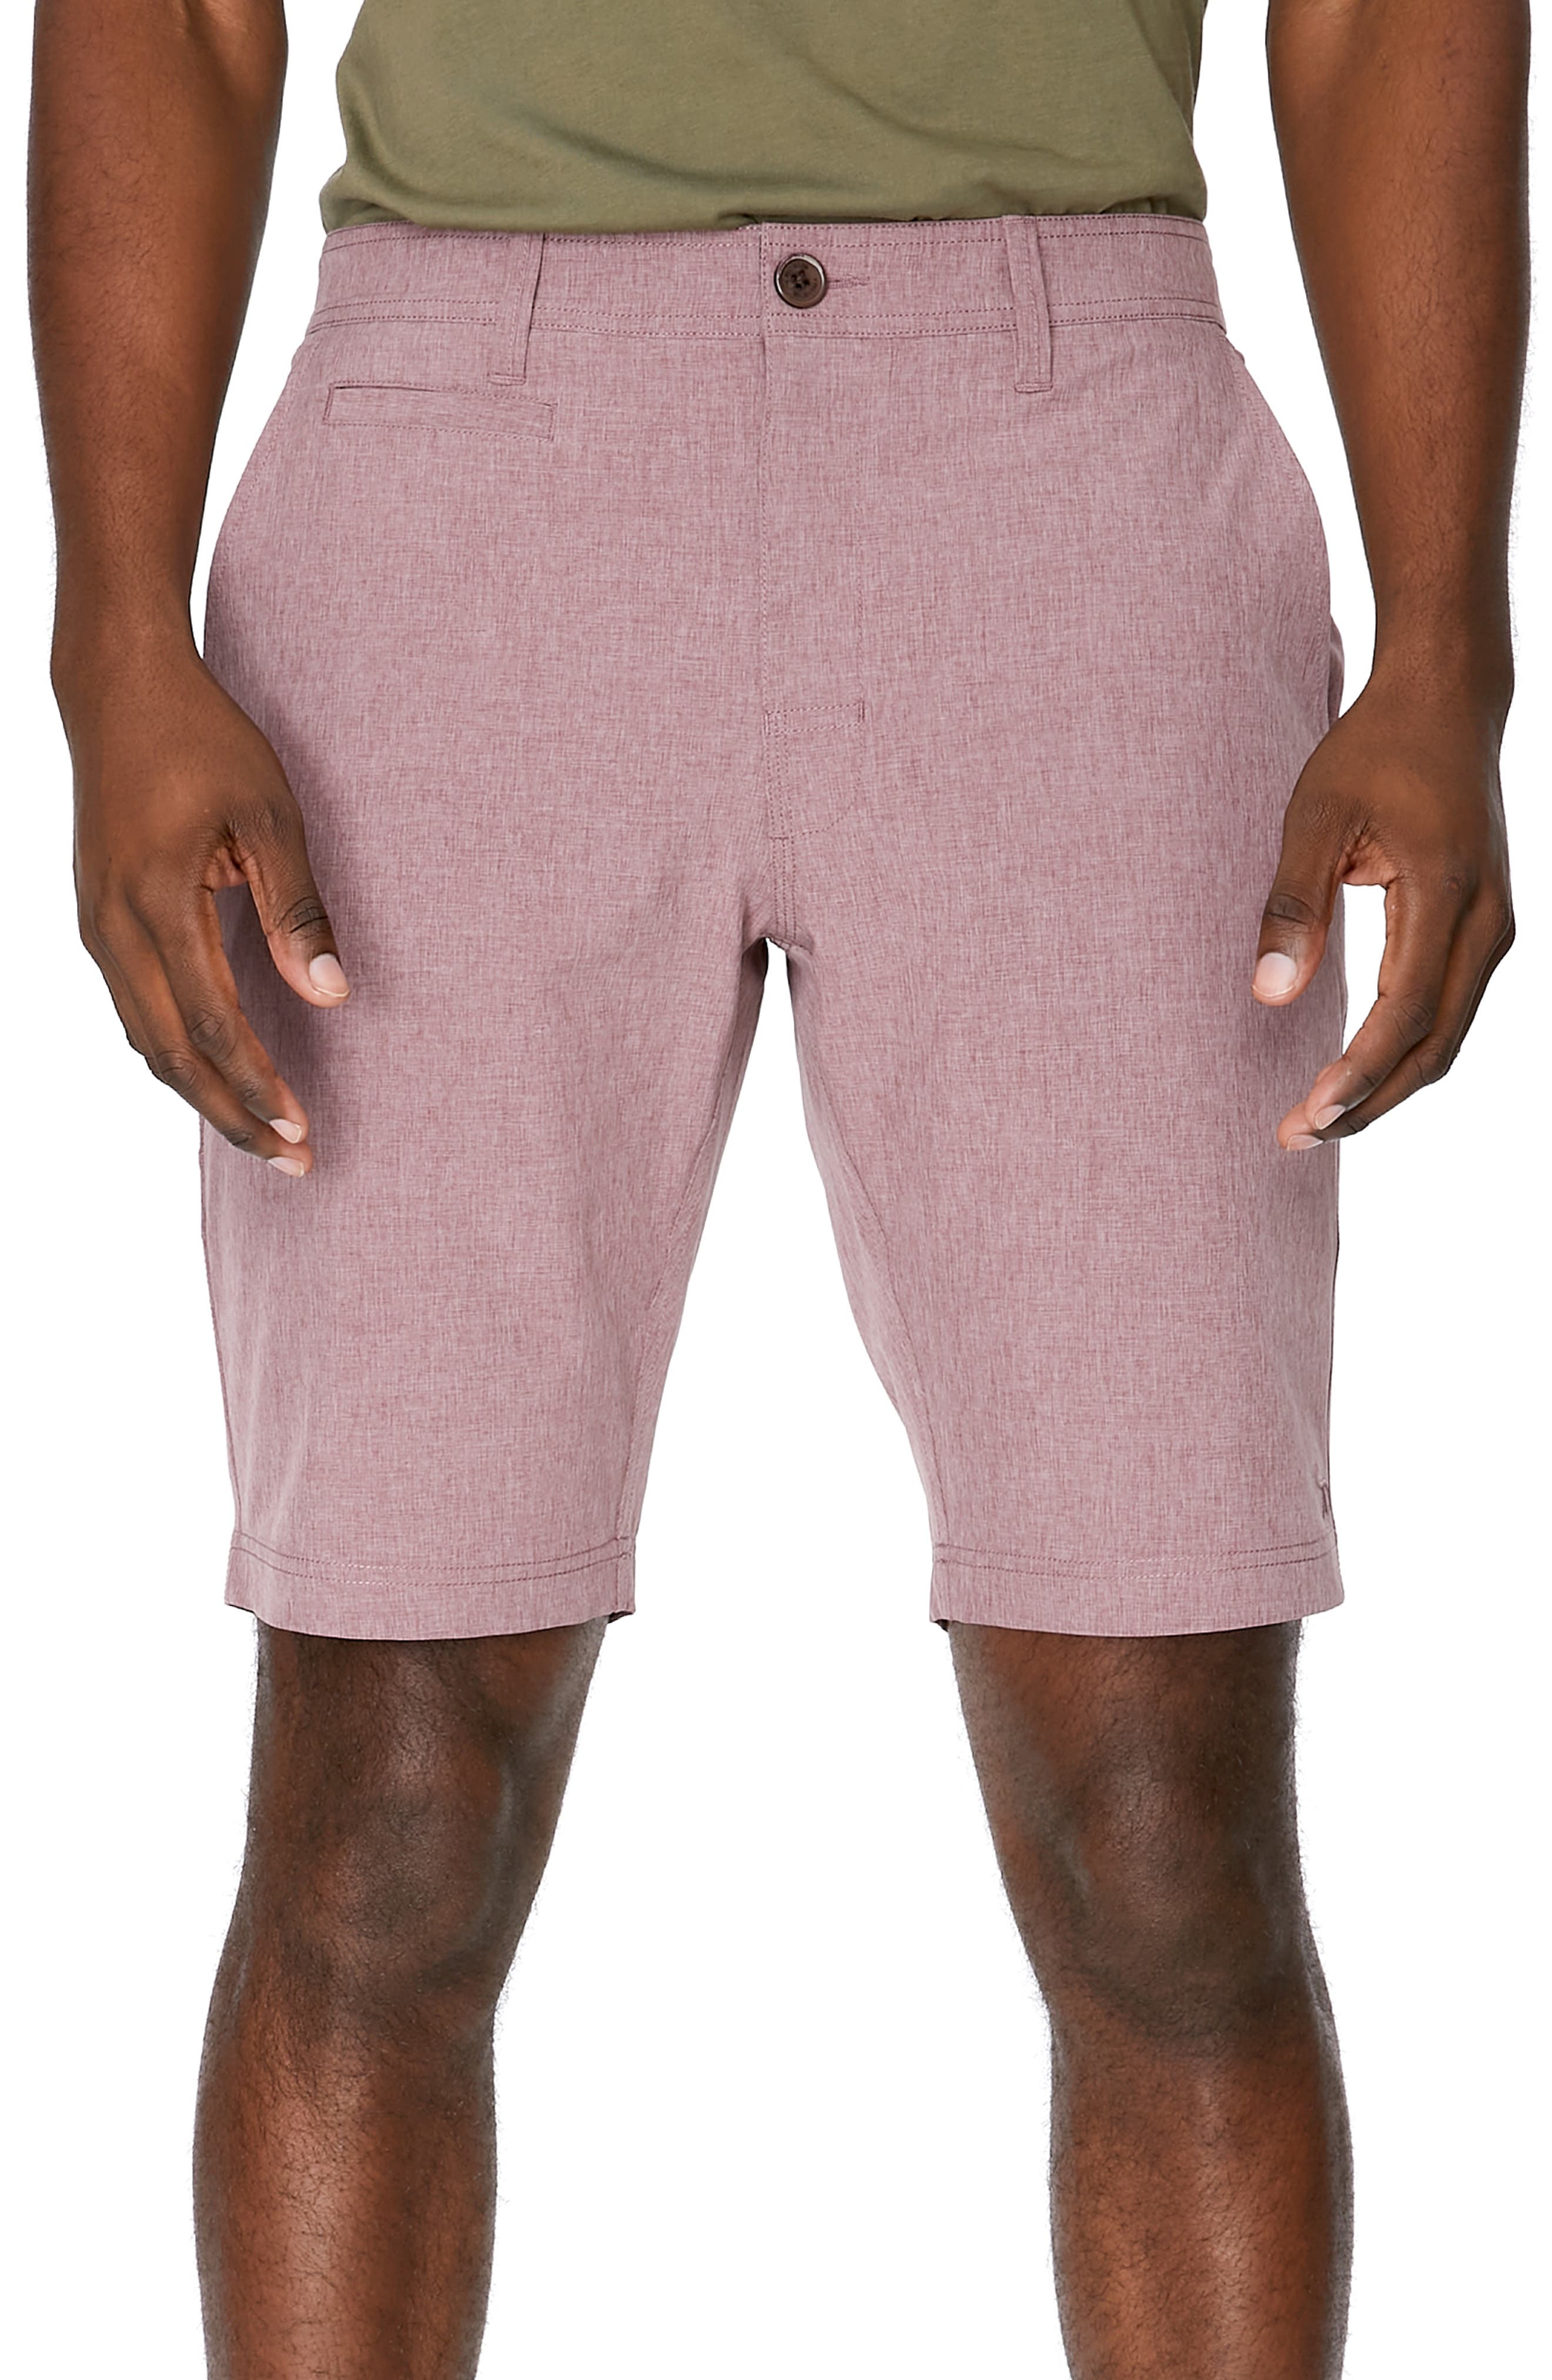 pink shorts fashion men